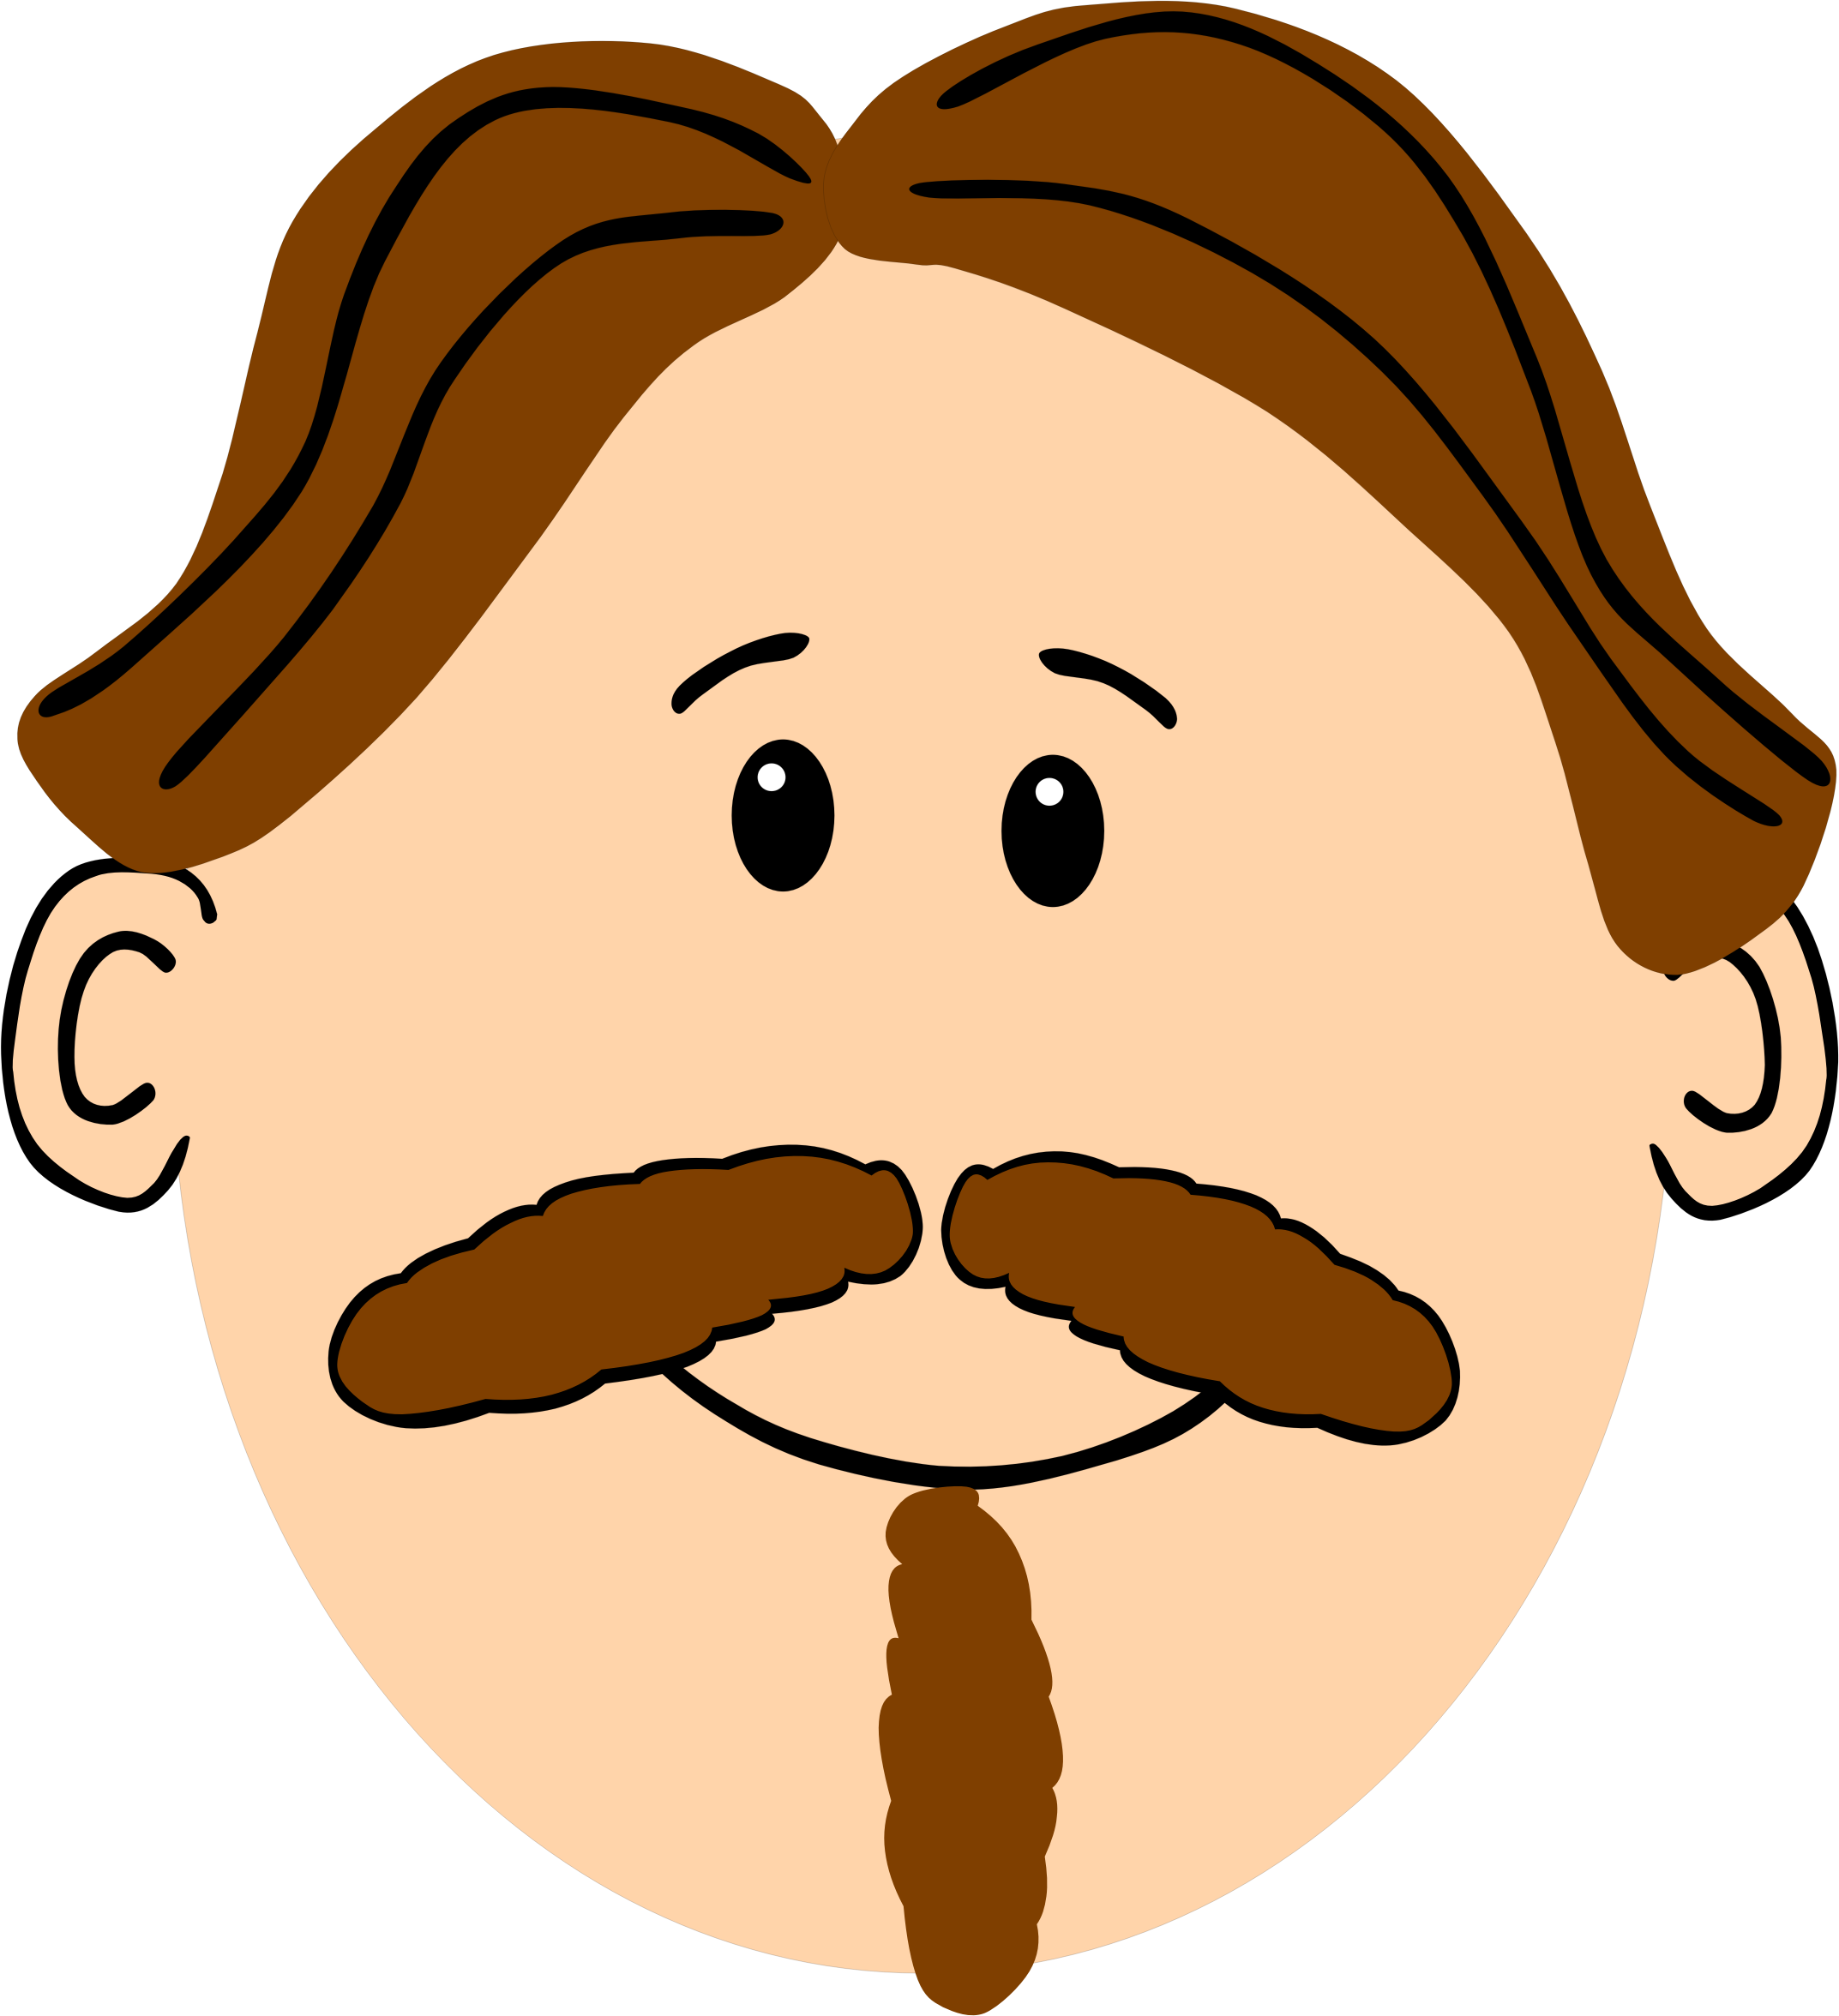 Moustache mustache man